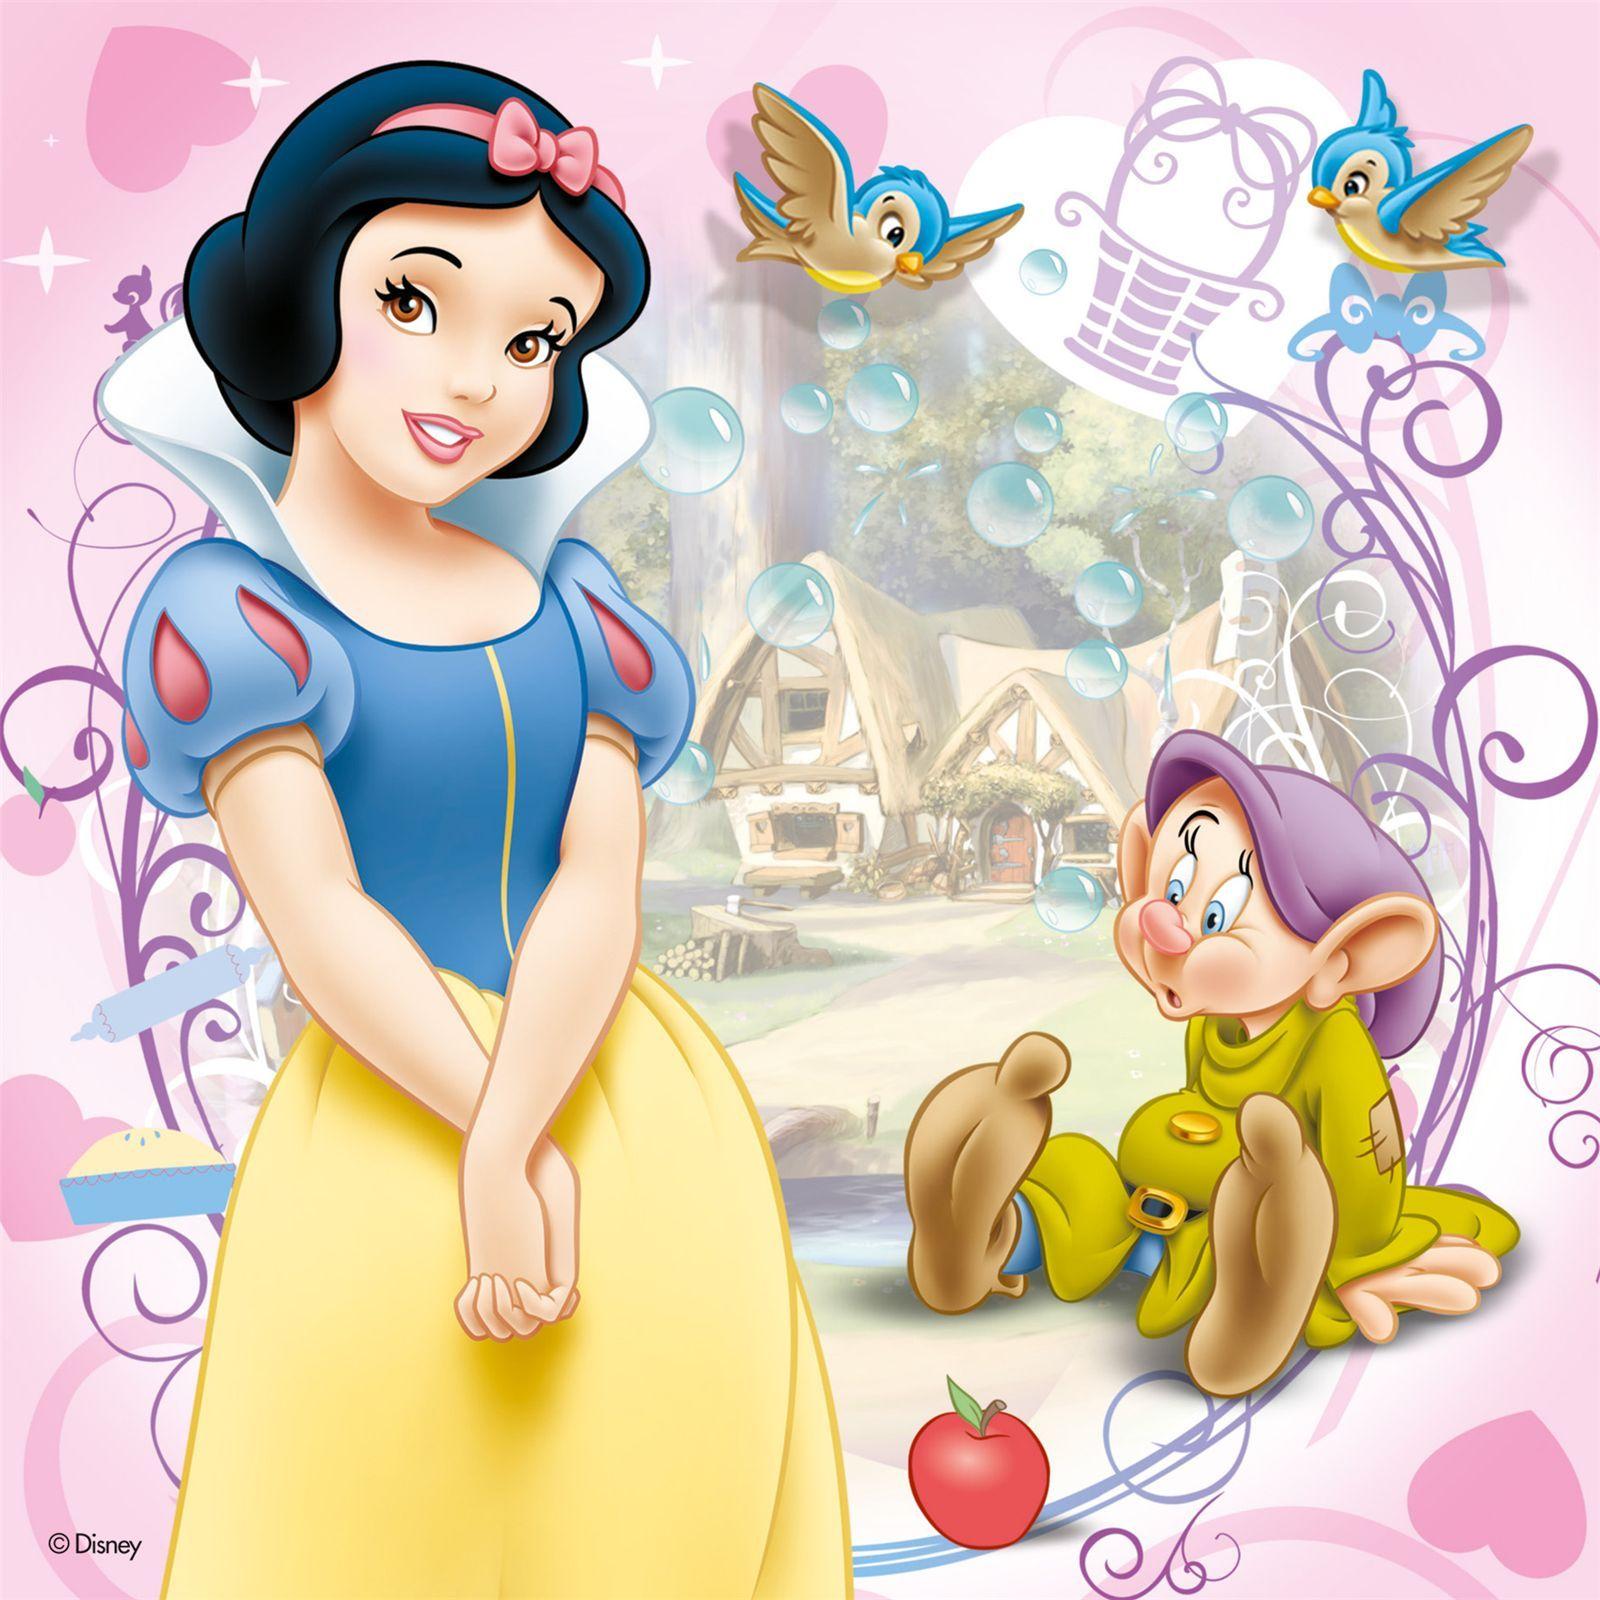 Snow White - Disney Princess Wallpaper (11308914) - Fanpop